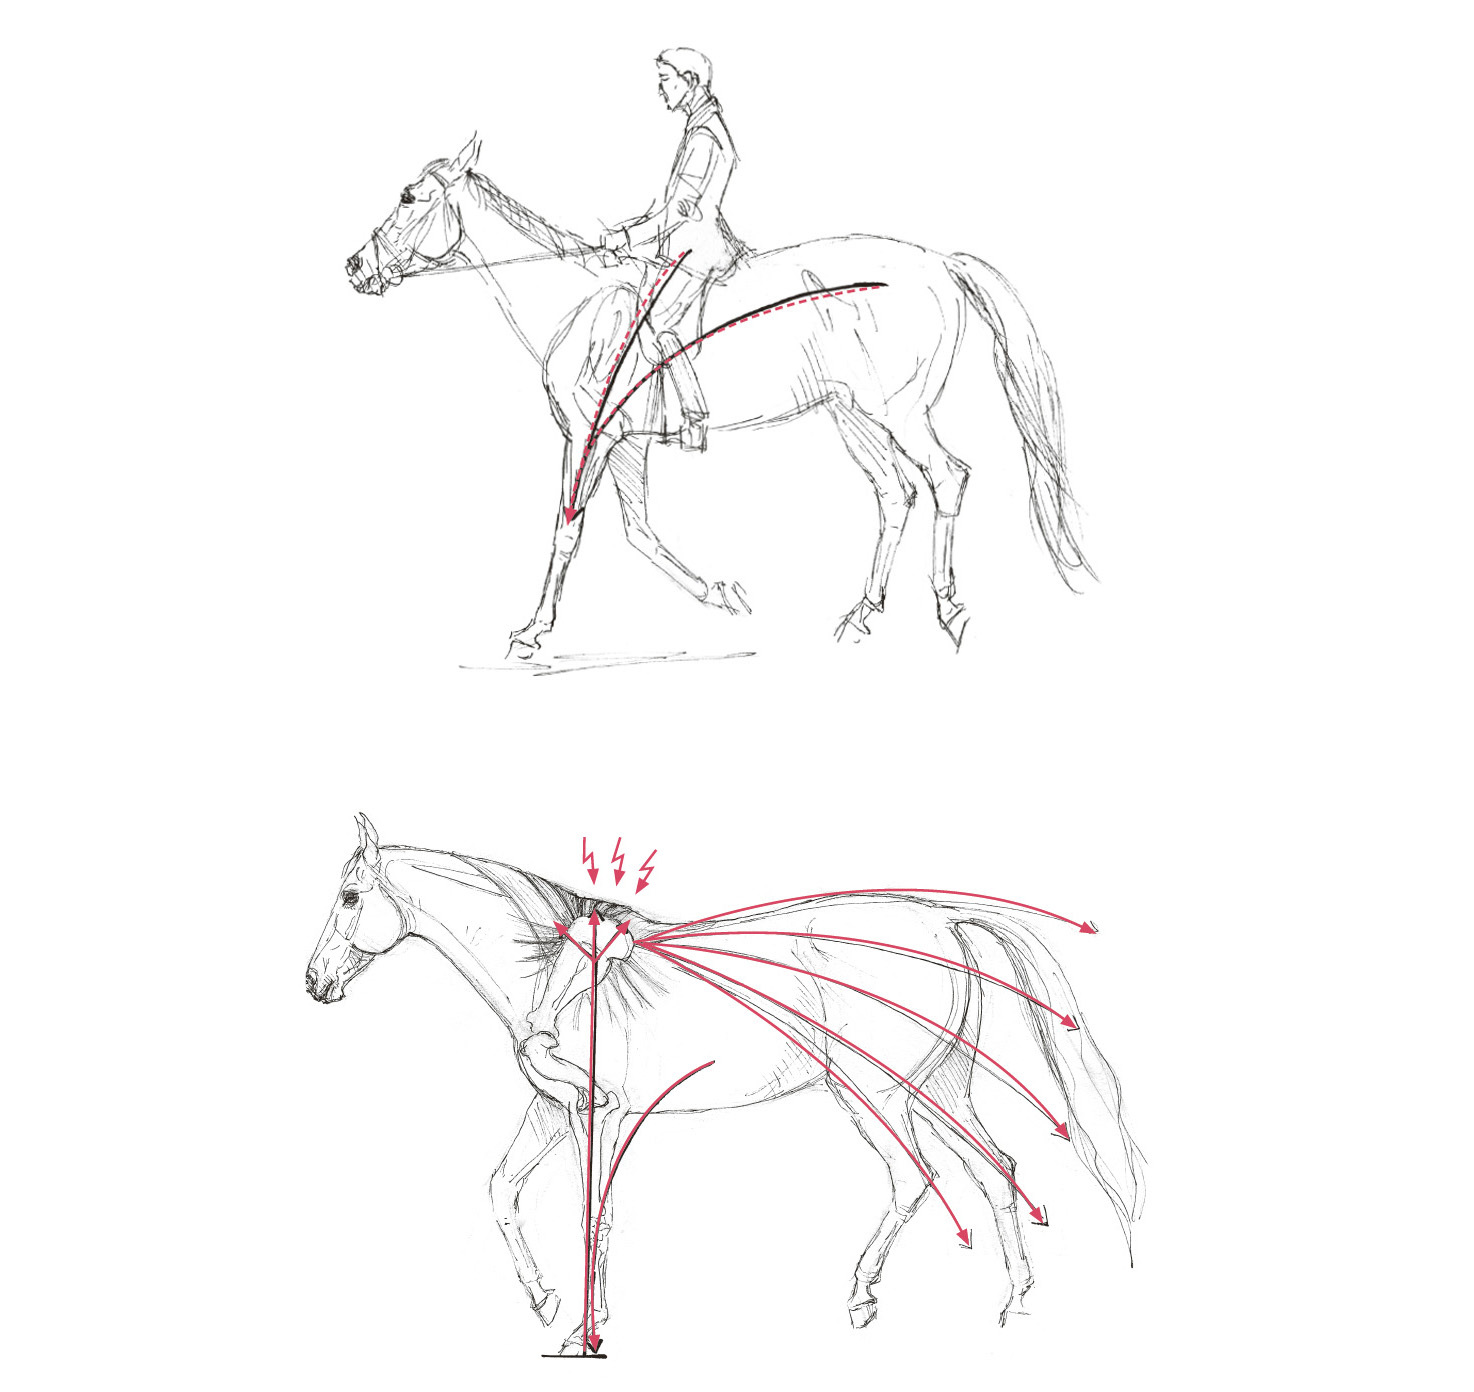 Die obere Zeichnung stellt eine Pferd dar, das einen Reiter auf ungesunde Weise trägt: Der Pferdekopf ist hoch in die Luft gestreckt, das Gewicht des Reiters drückt auf den Rumpf und die Vorhand des Pferdes. Rote Pfeile illustrieren, dass das Gewicht der Reiters in dieser Haltung auf den Vorderbeinen liegt. Das untere Bild zeigt ein Pferd ohne Reiter. Die Zeichnung visualisiert den Moment des Abstützens auf dem Vorderbein im Schritt. Rot eingezeichnet sind die negativen Kräfte, die in diesem Moment auf den Vorderhuf, den Widerristbereich und den Trapezmuskel wirken.